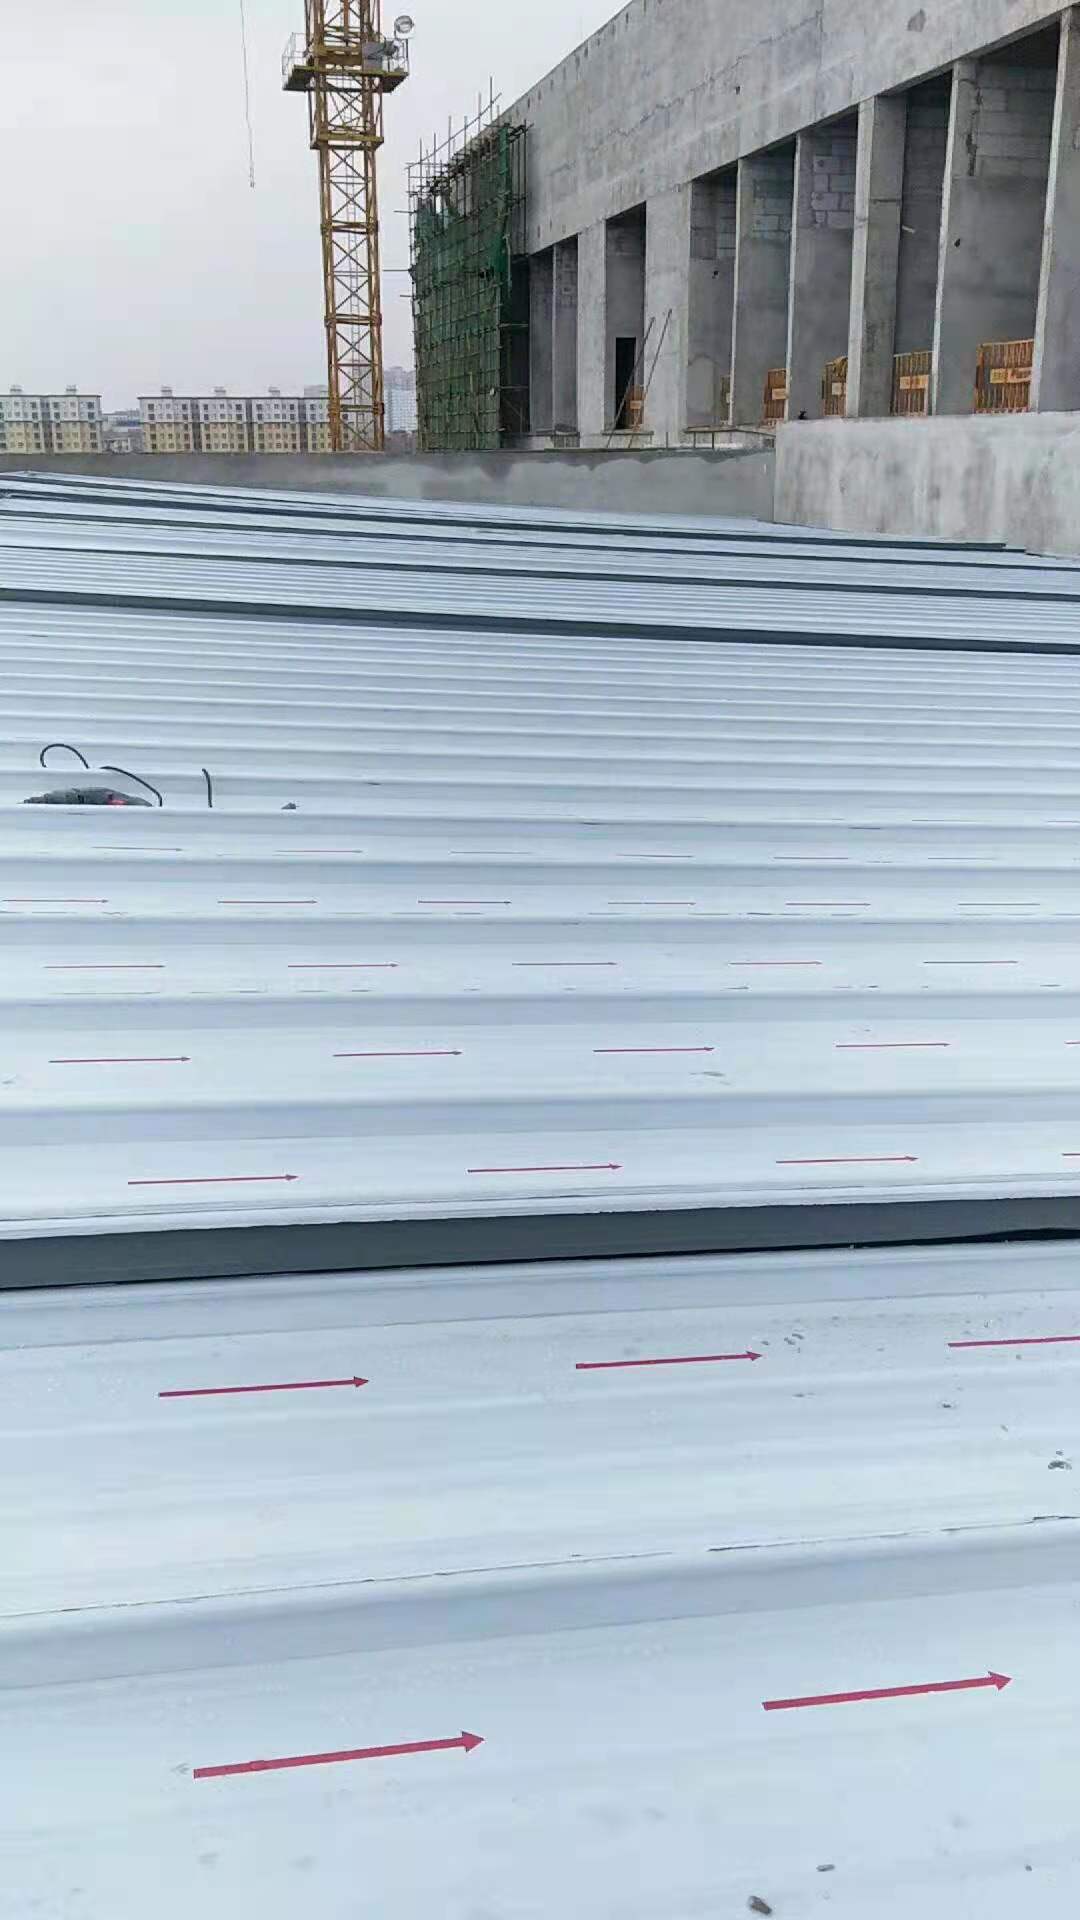 内蒙古鄂尔多斯铝镁锰直立锁边屋面板直销